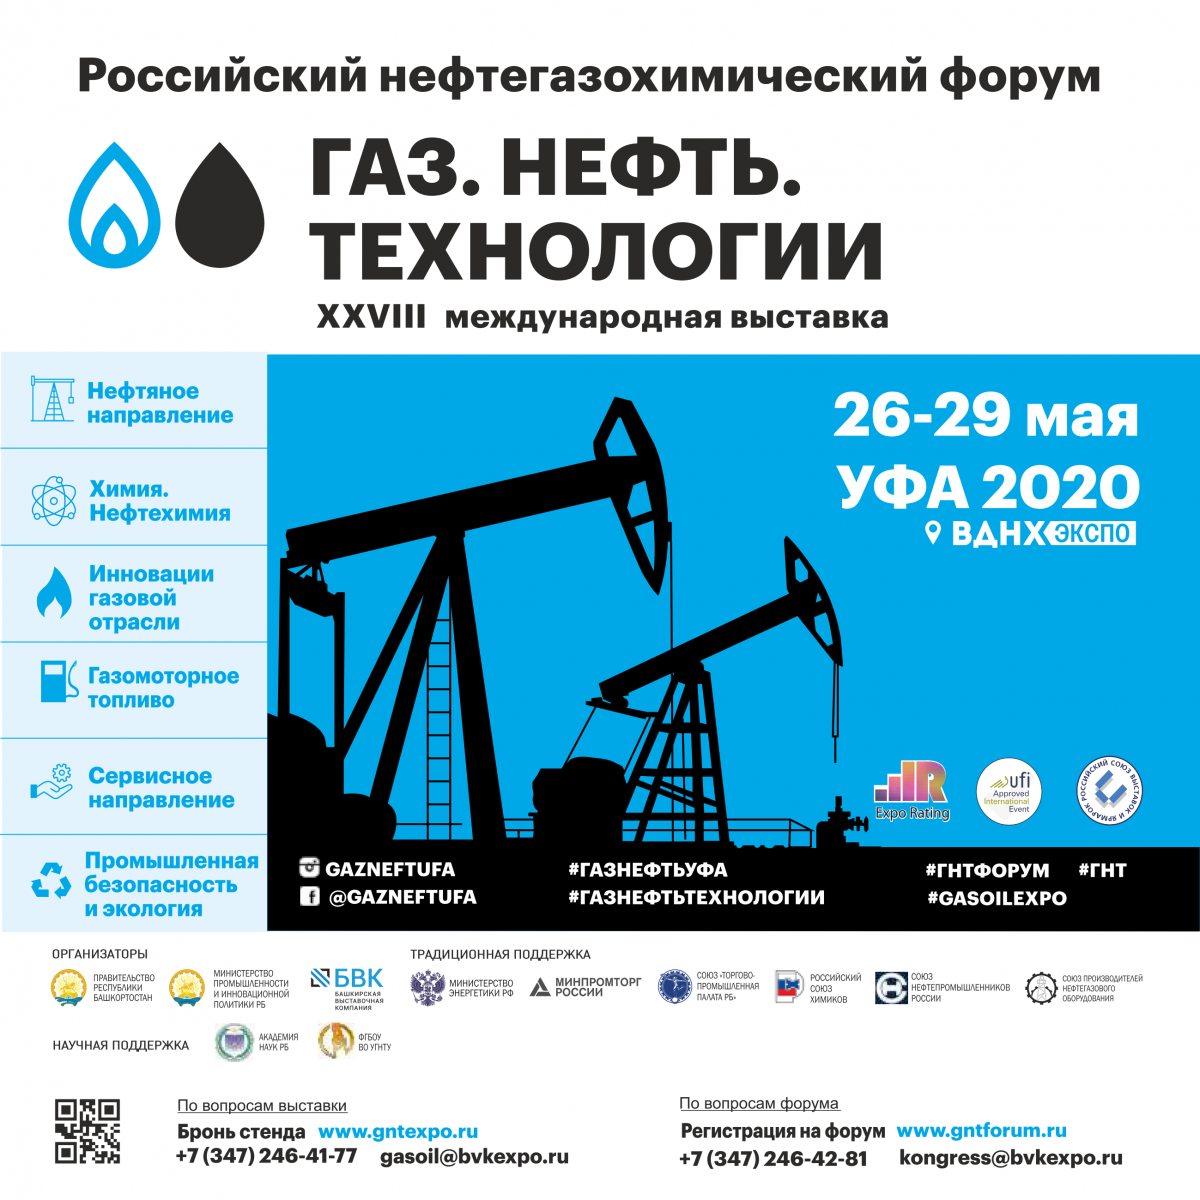 Газ. Нефть. Технологии 2020 - международная специализированная выставка и нефтегазохимический форум